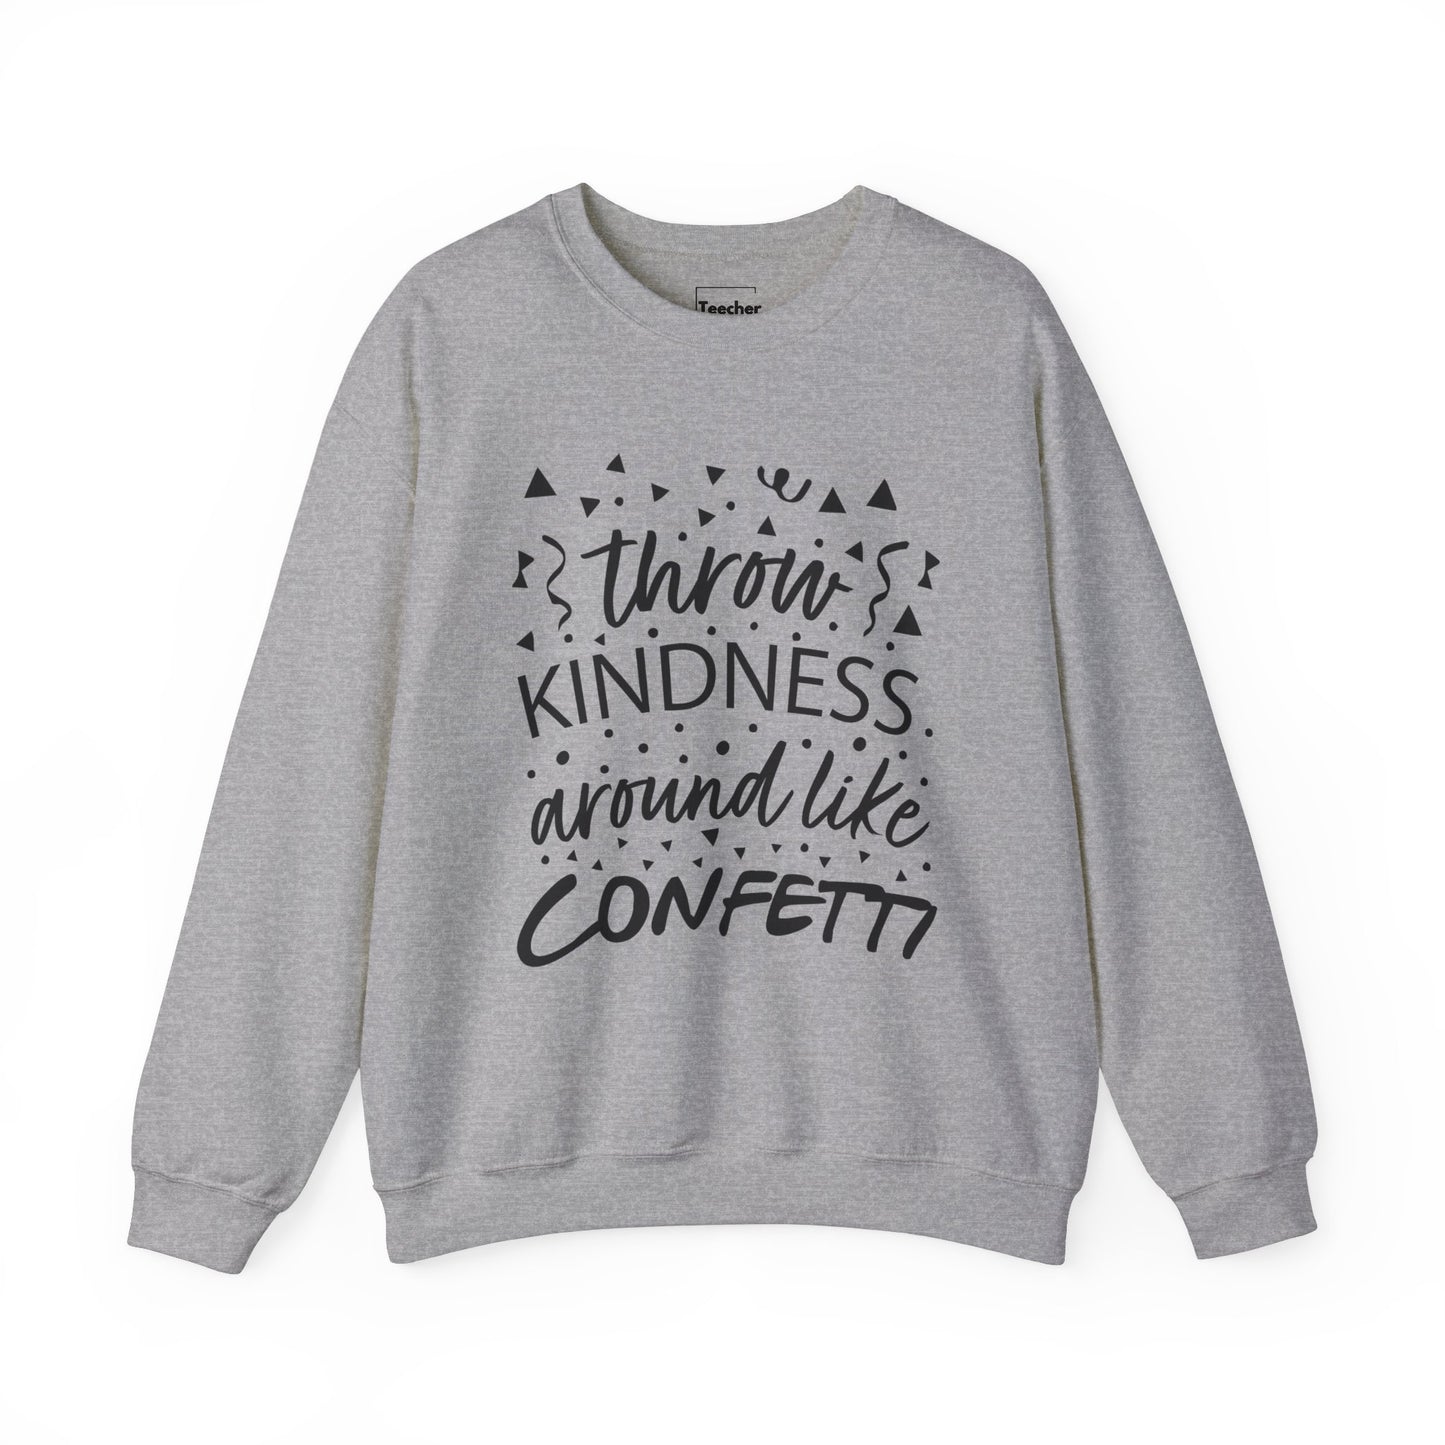 Kindness Confetti Sweatshirt